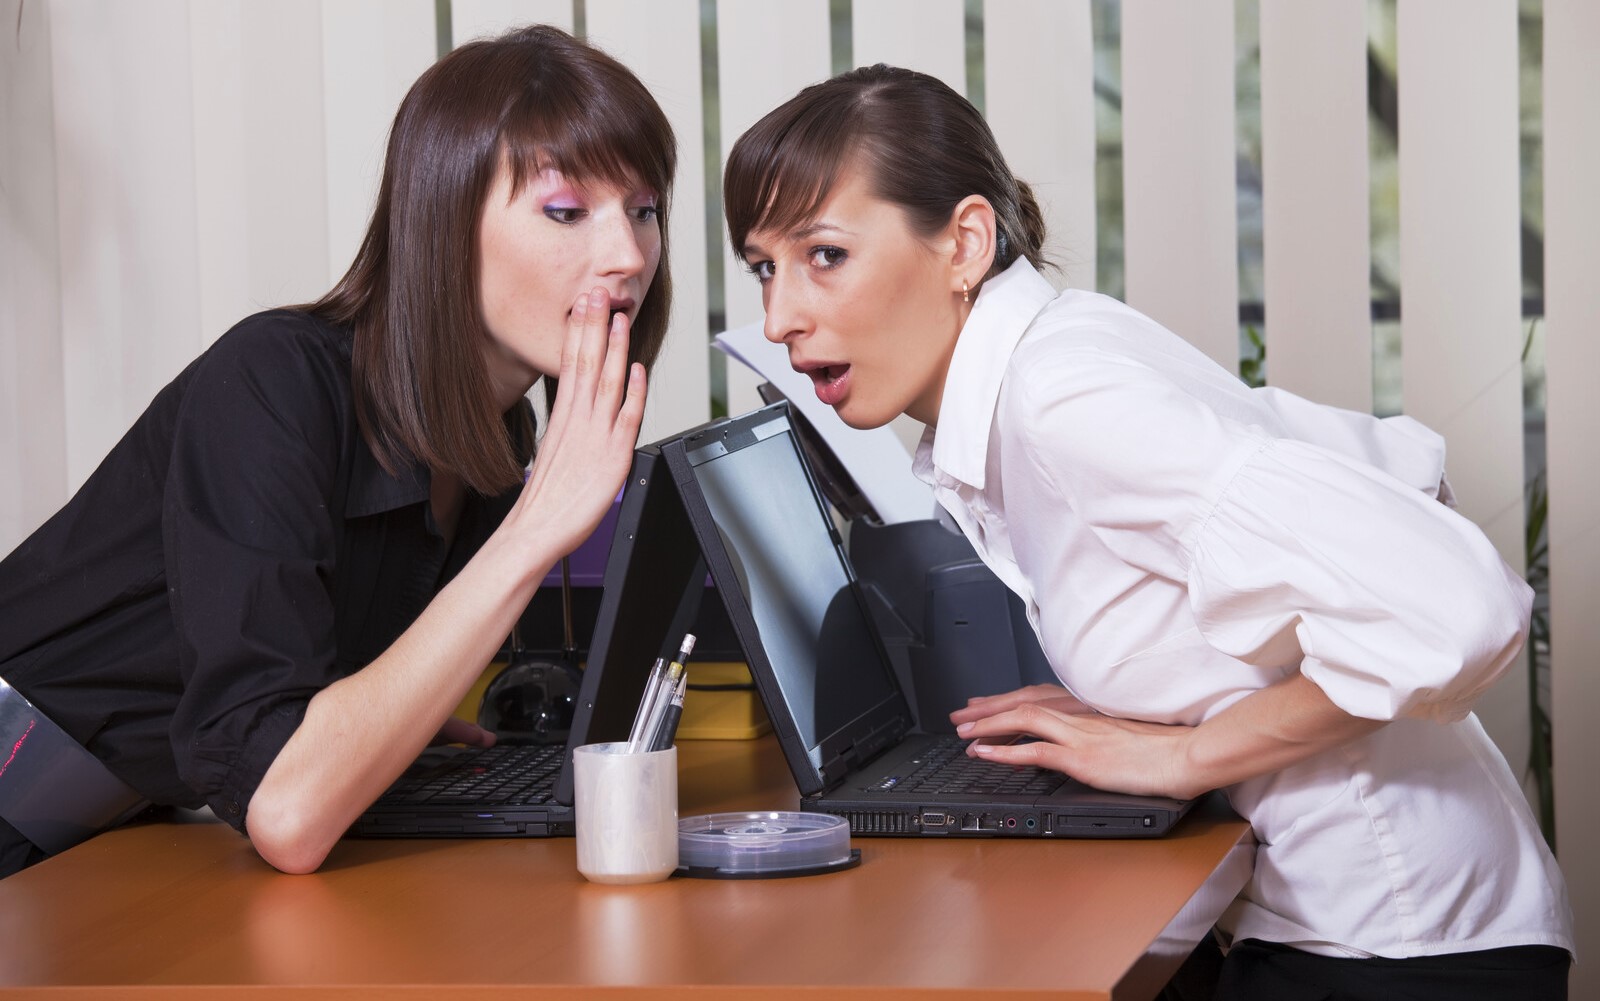 two women gossiping in an office setting